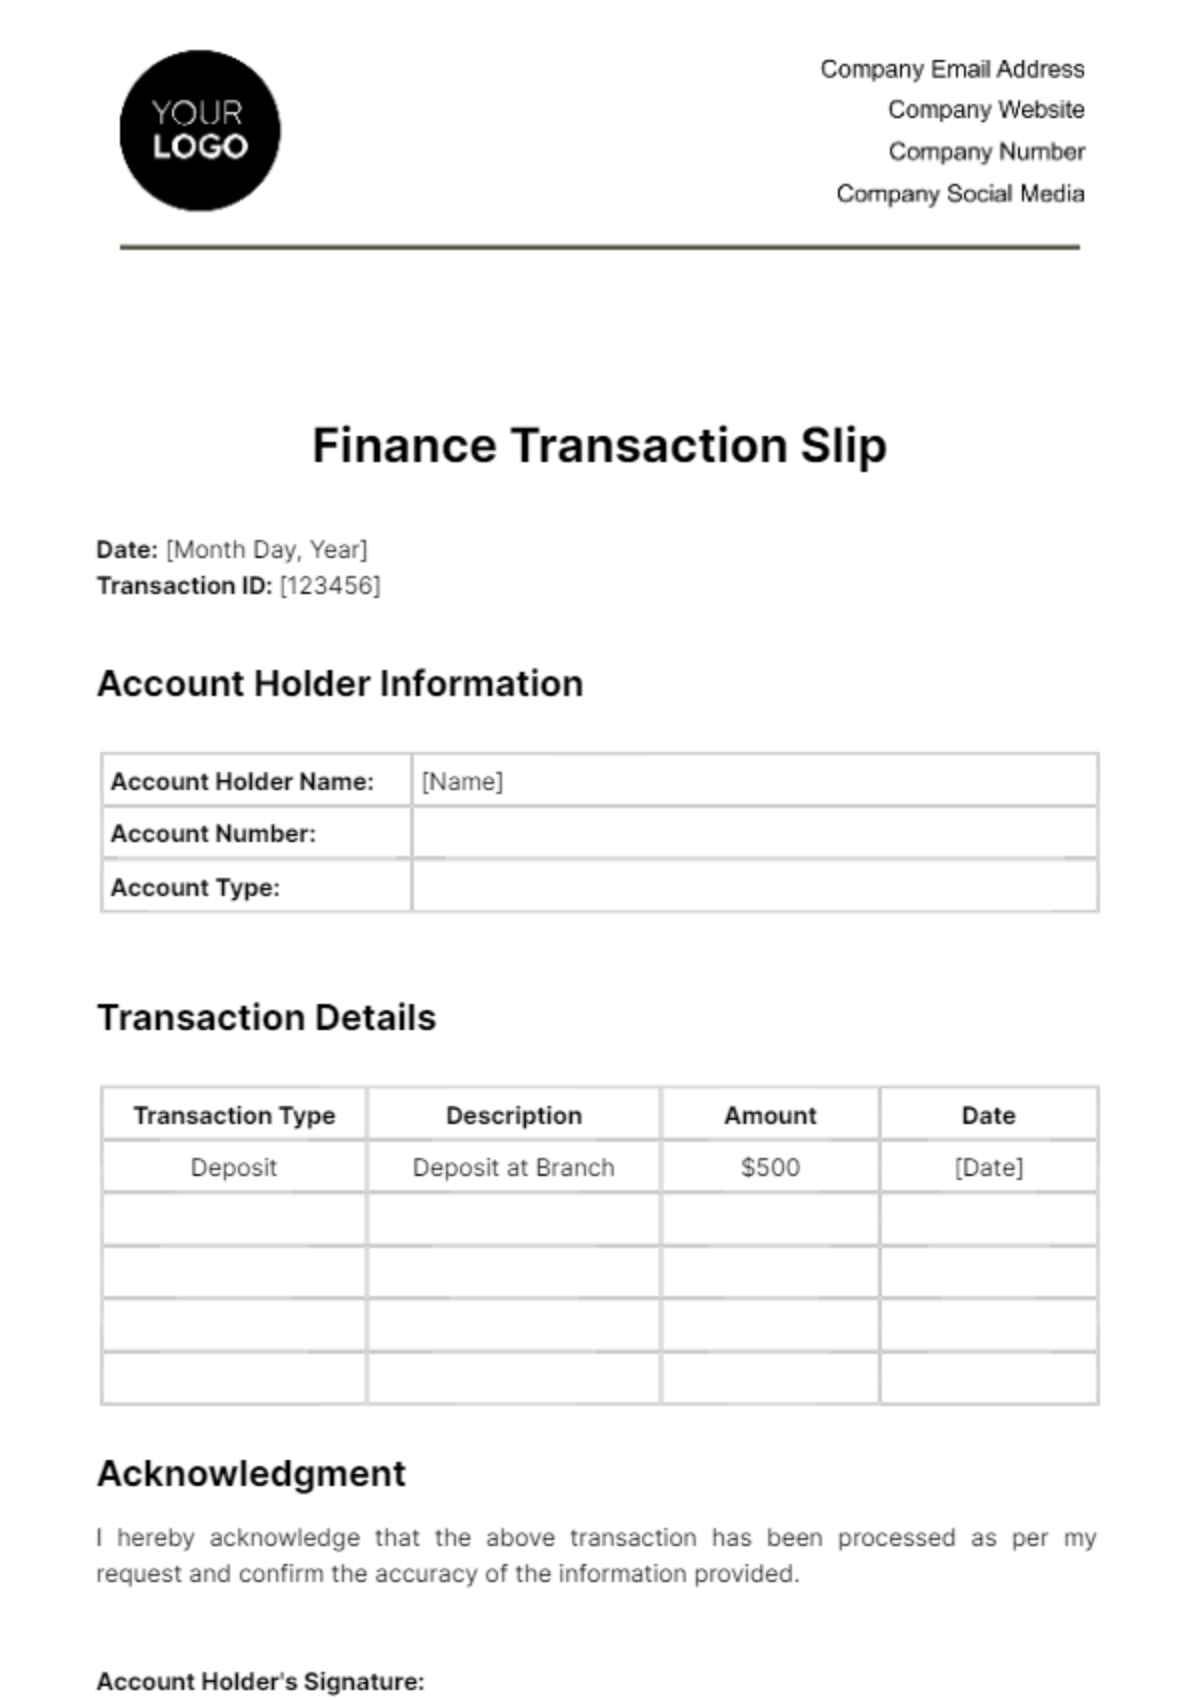 Finance Transaction Slip Template